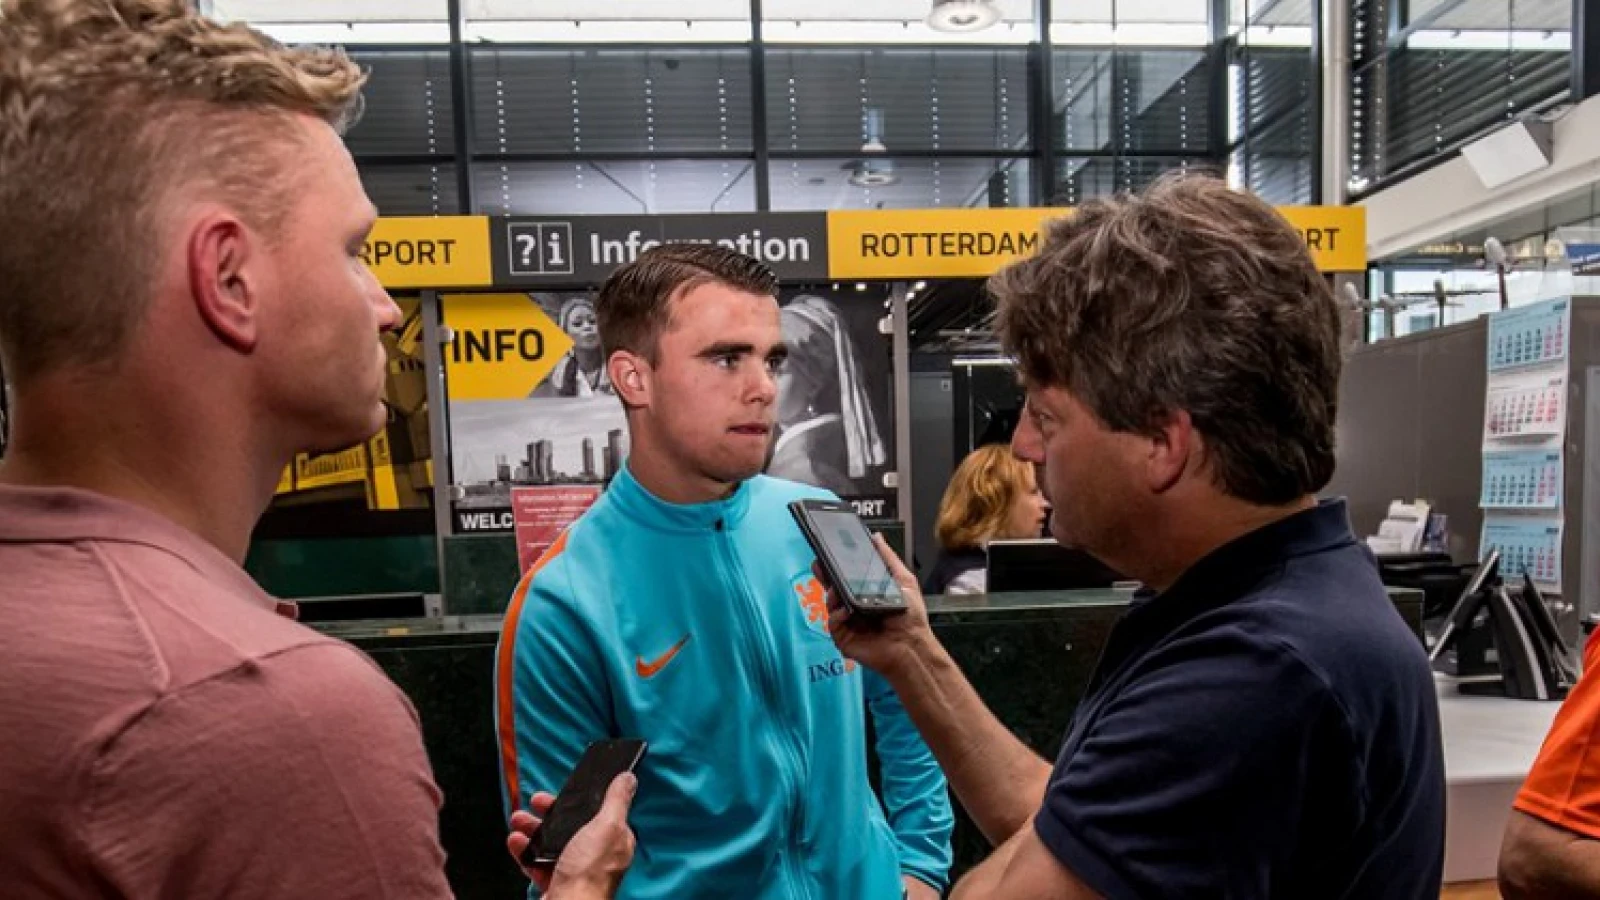 Koorevaar zegt Feyenoord vaarwel: 'Helaas was dit de laatste dag'